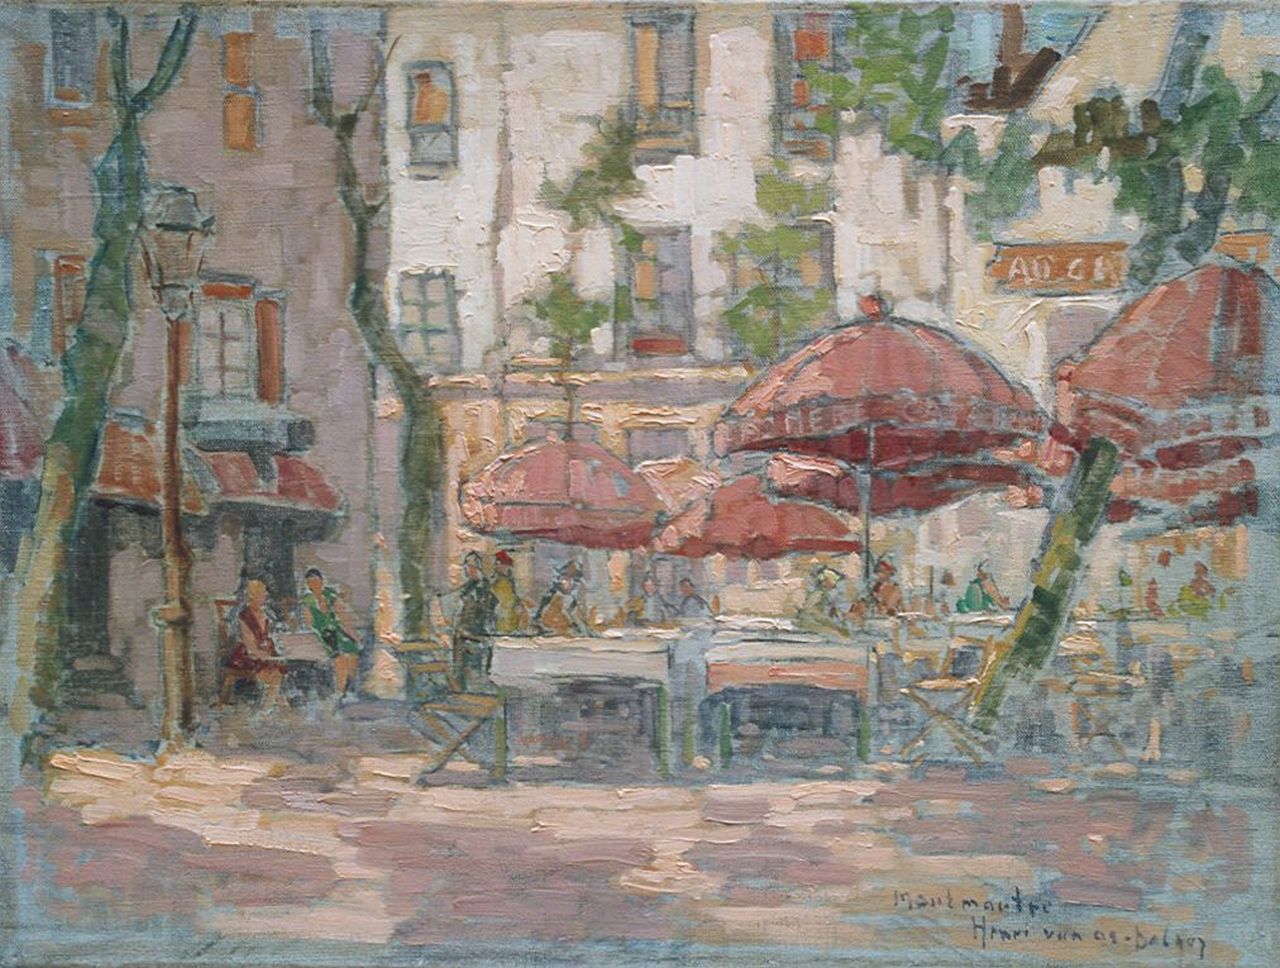 Os-Delhez (Hendrik van Os) H. van | Hendrik 'Henri' van Os-Delhez (Hendrik van Os), Terrace at Montmartre, Öl auf Leinwand 30,2 x 40,3 cm, signed l.r.